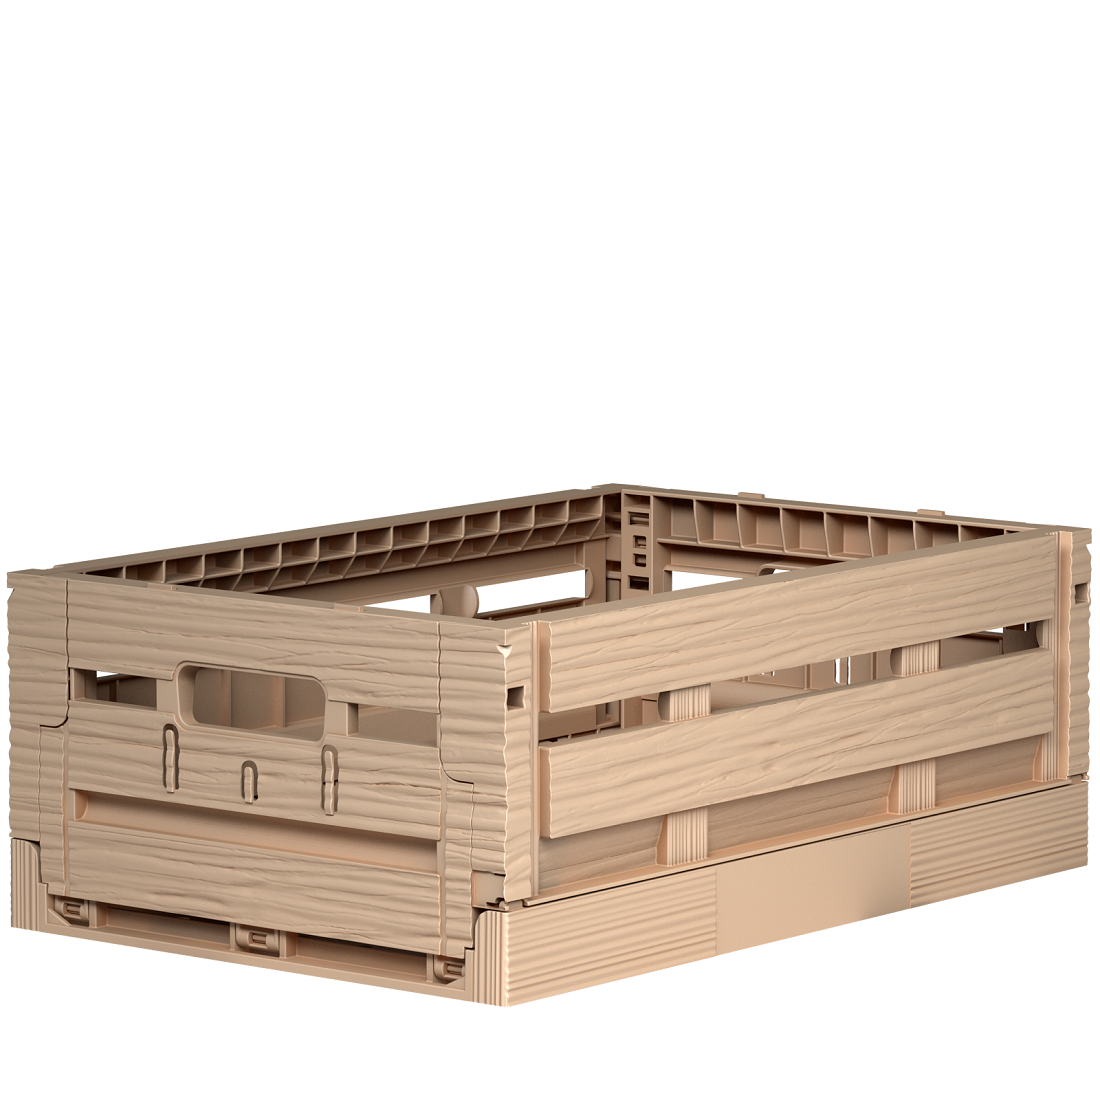 1 Kiste klappbar in Holzoptik vielseitig einsetzbar 40 x 30 x 16,5 cm Gastlando 